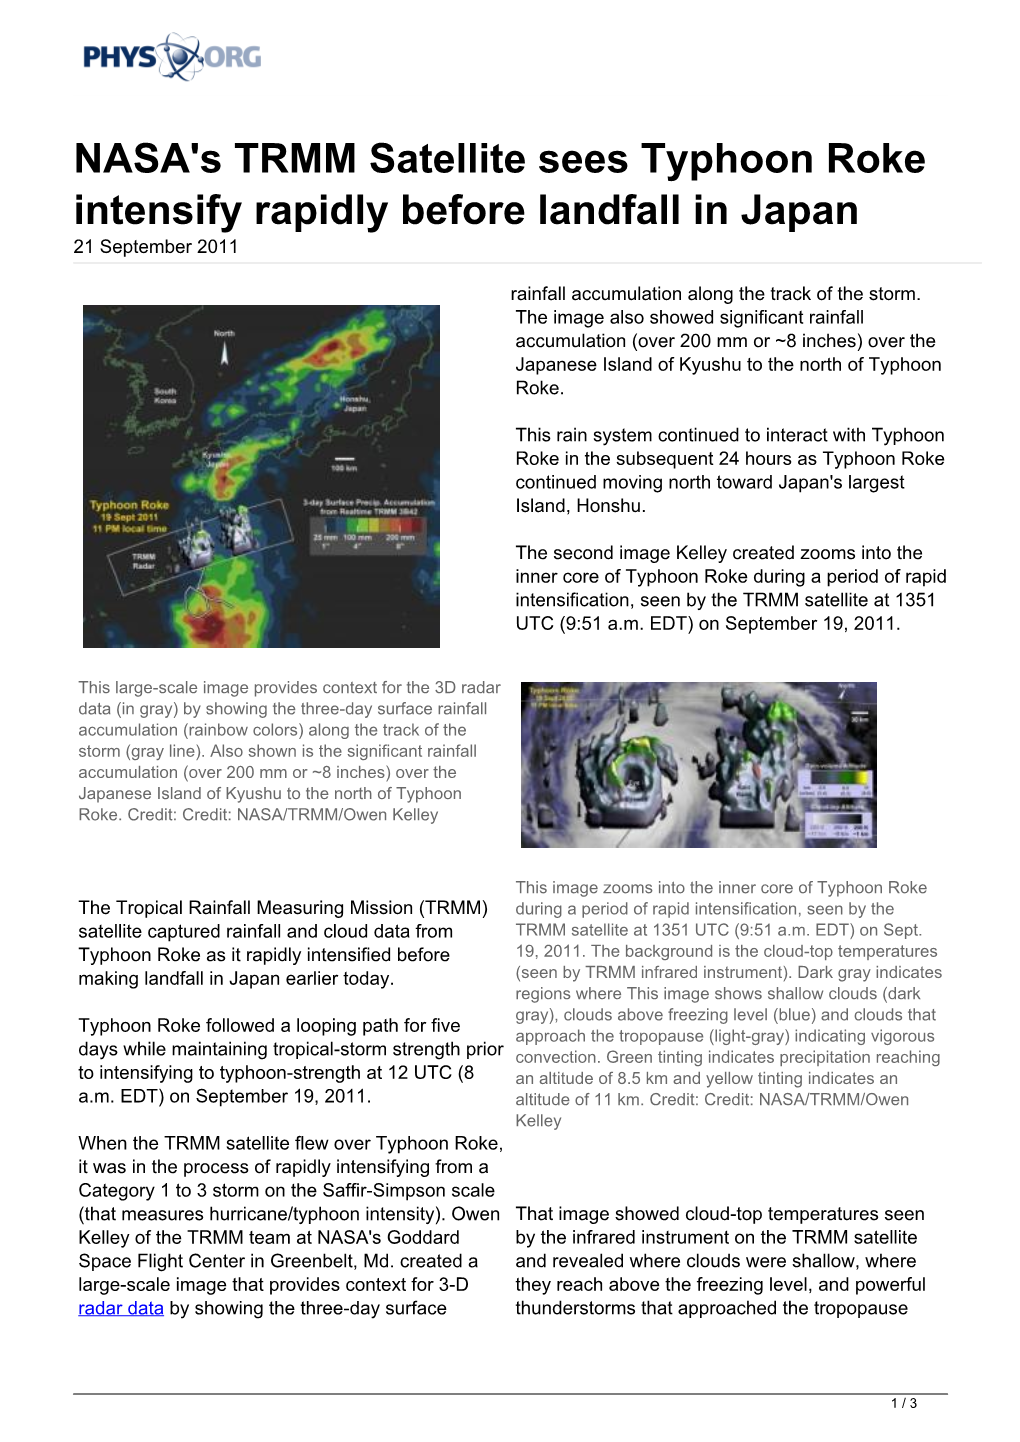 NASA's TRMM Satellite Sees Typhoon Roke Intensify Rapidly Before Landfall in Japan 21 September 2011